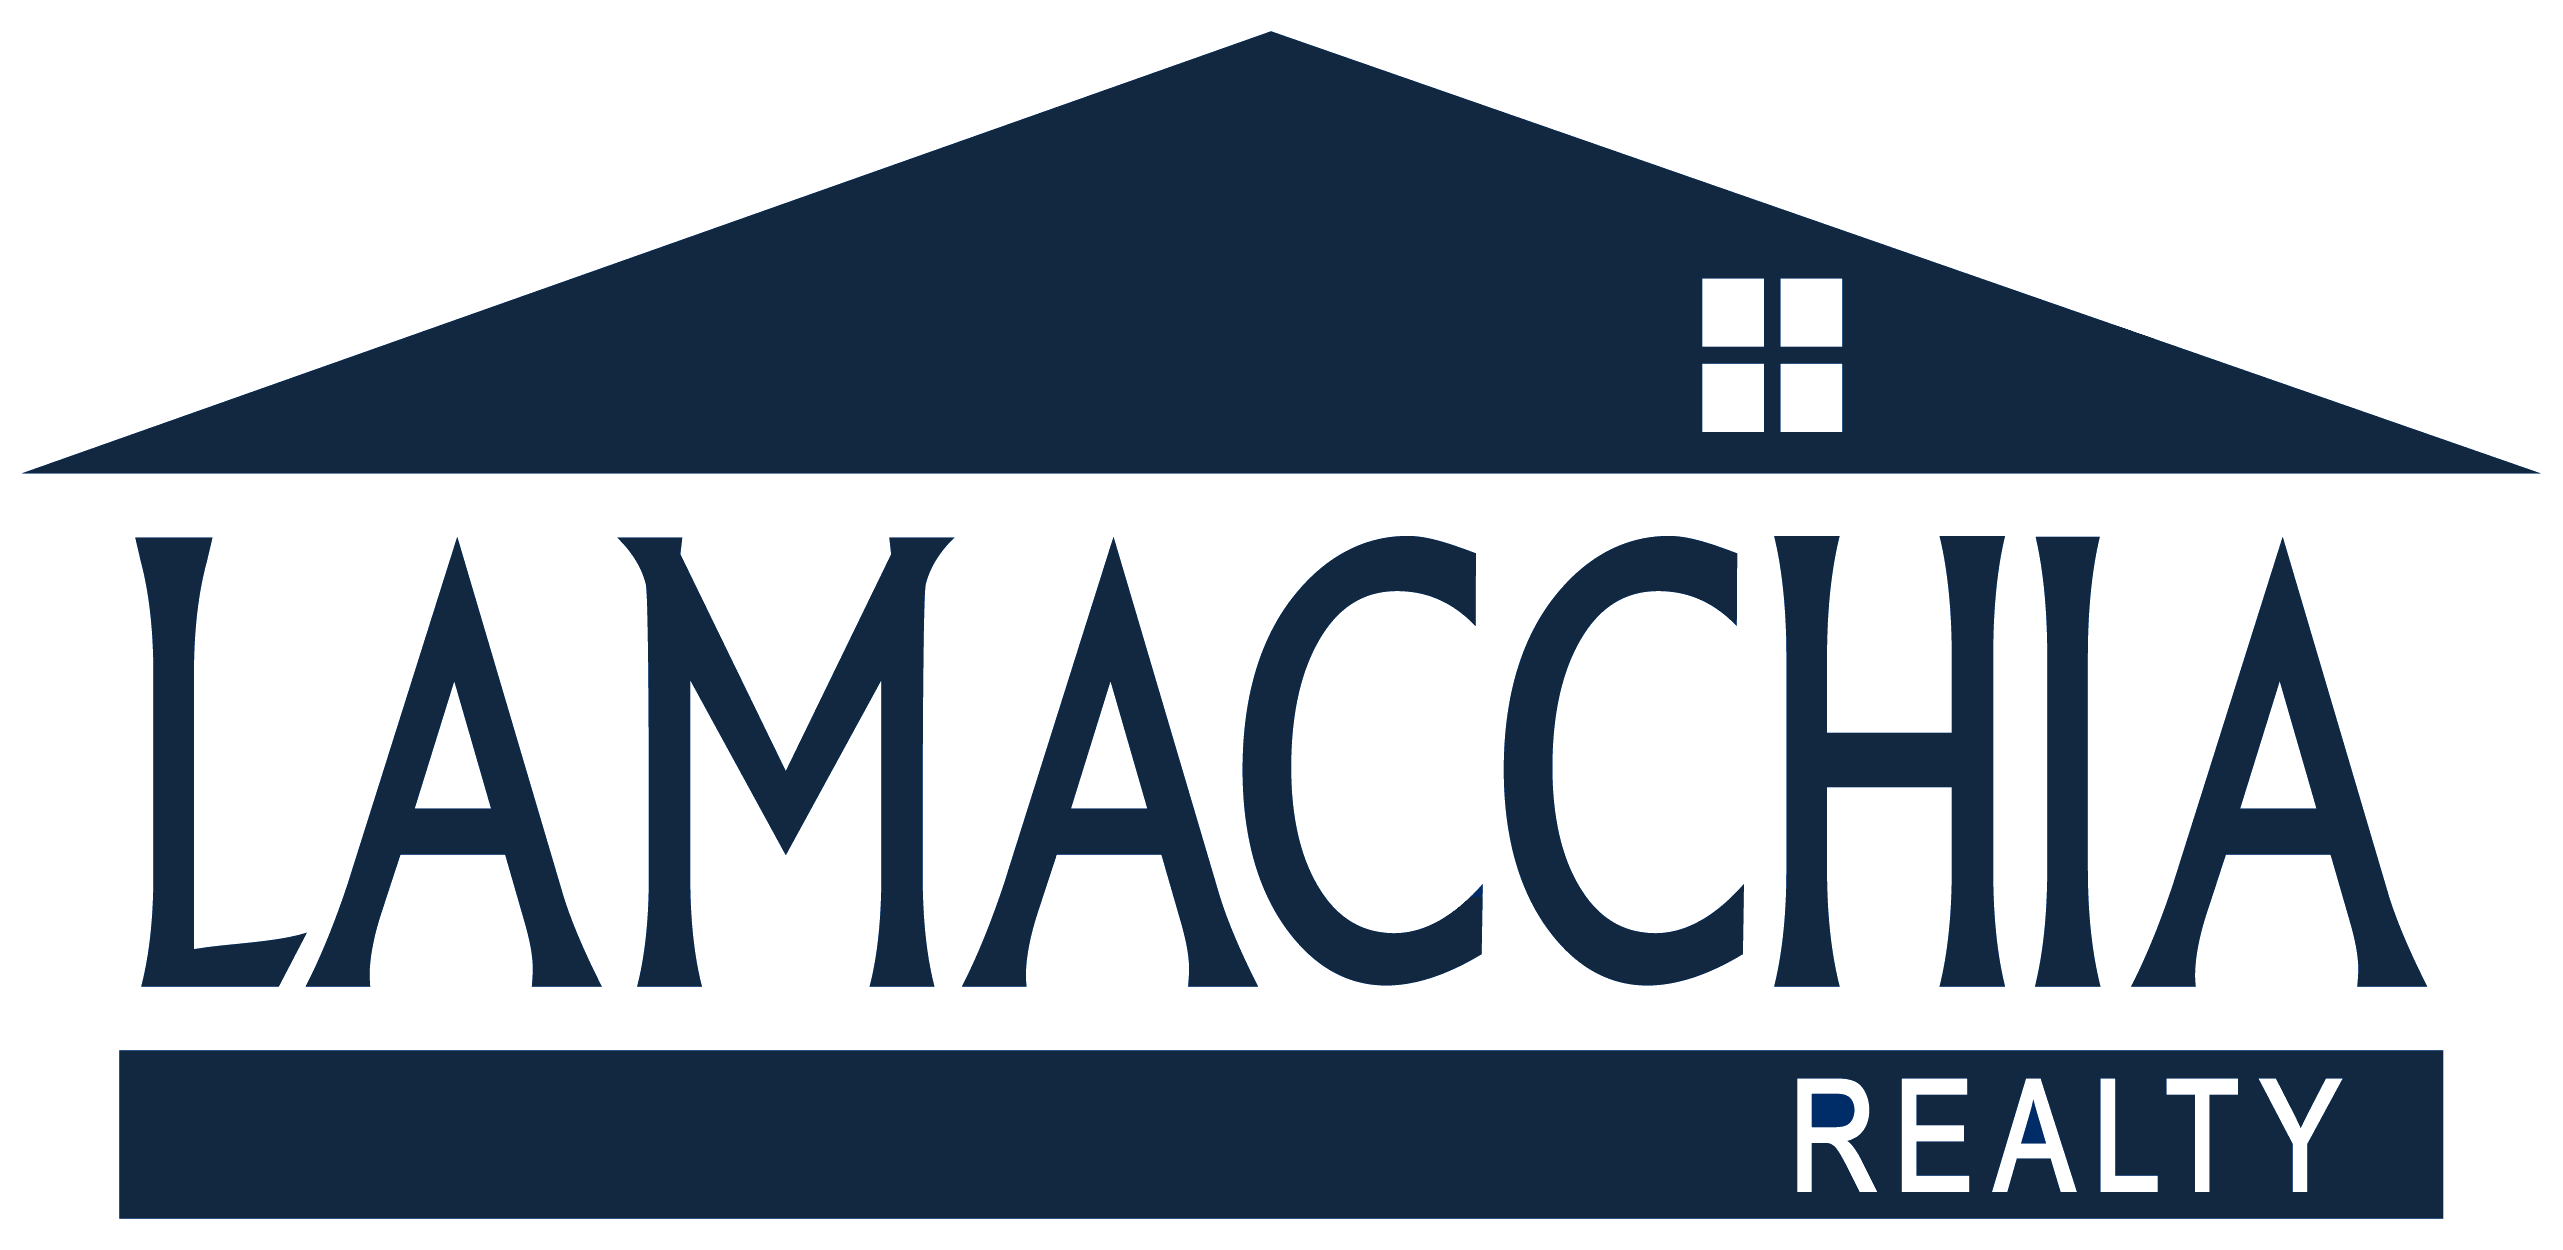 lamacchia realty logo